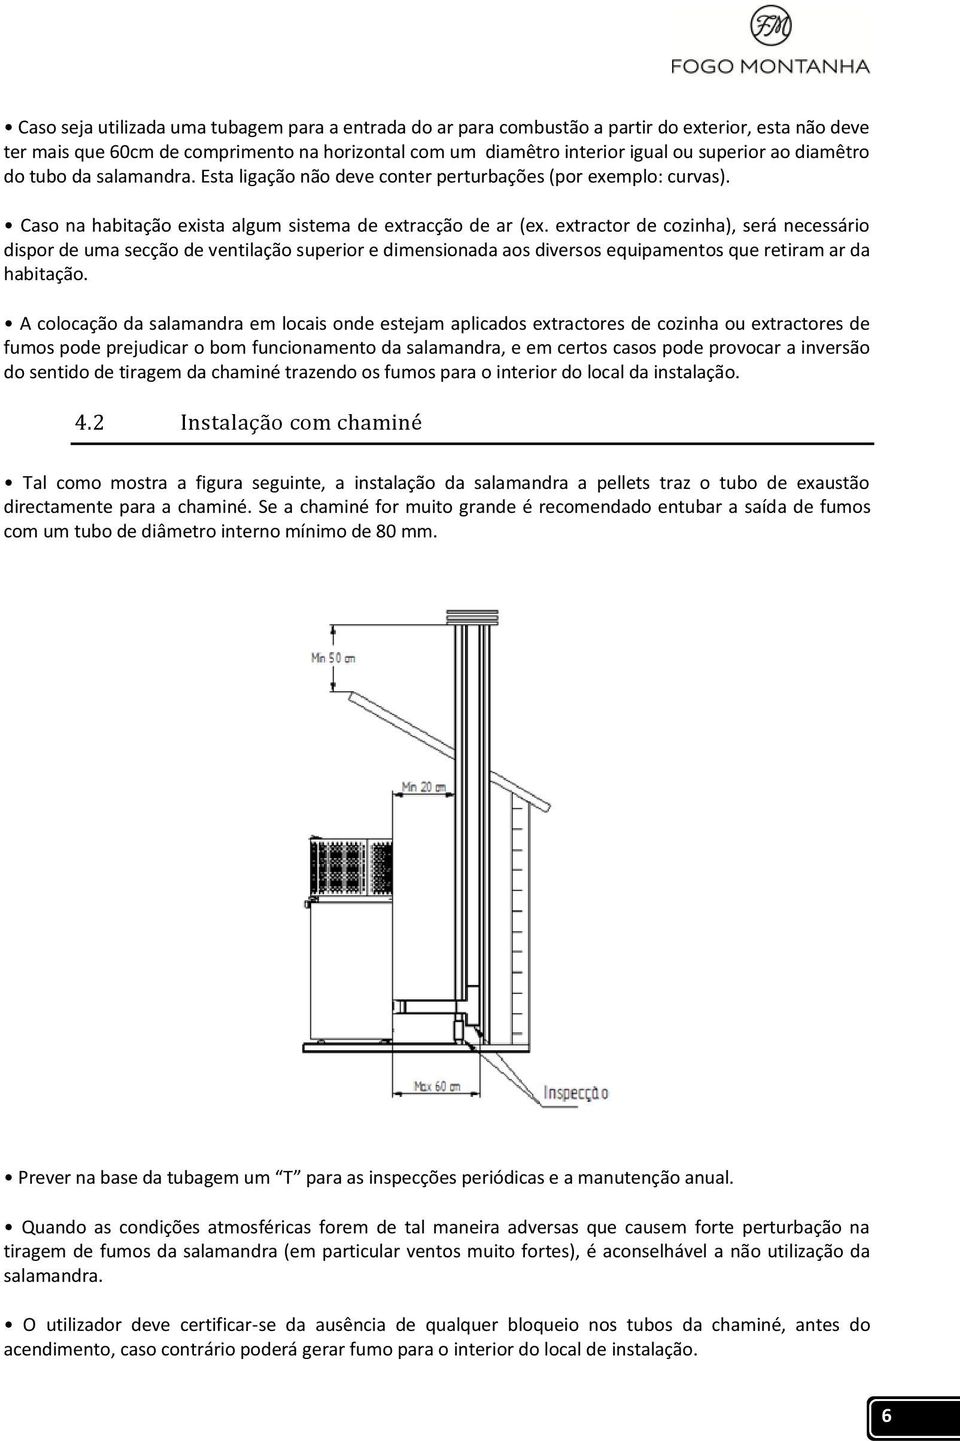 extractor de cozinha), será necessário dispor de uma secção de ventilação superior e dimensionada aos diversos equipamentos que retiram ar da habitação.